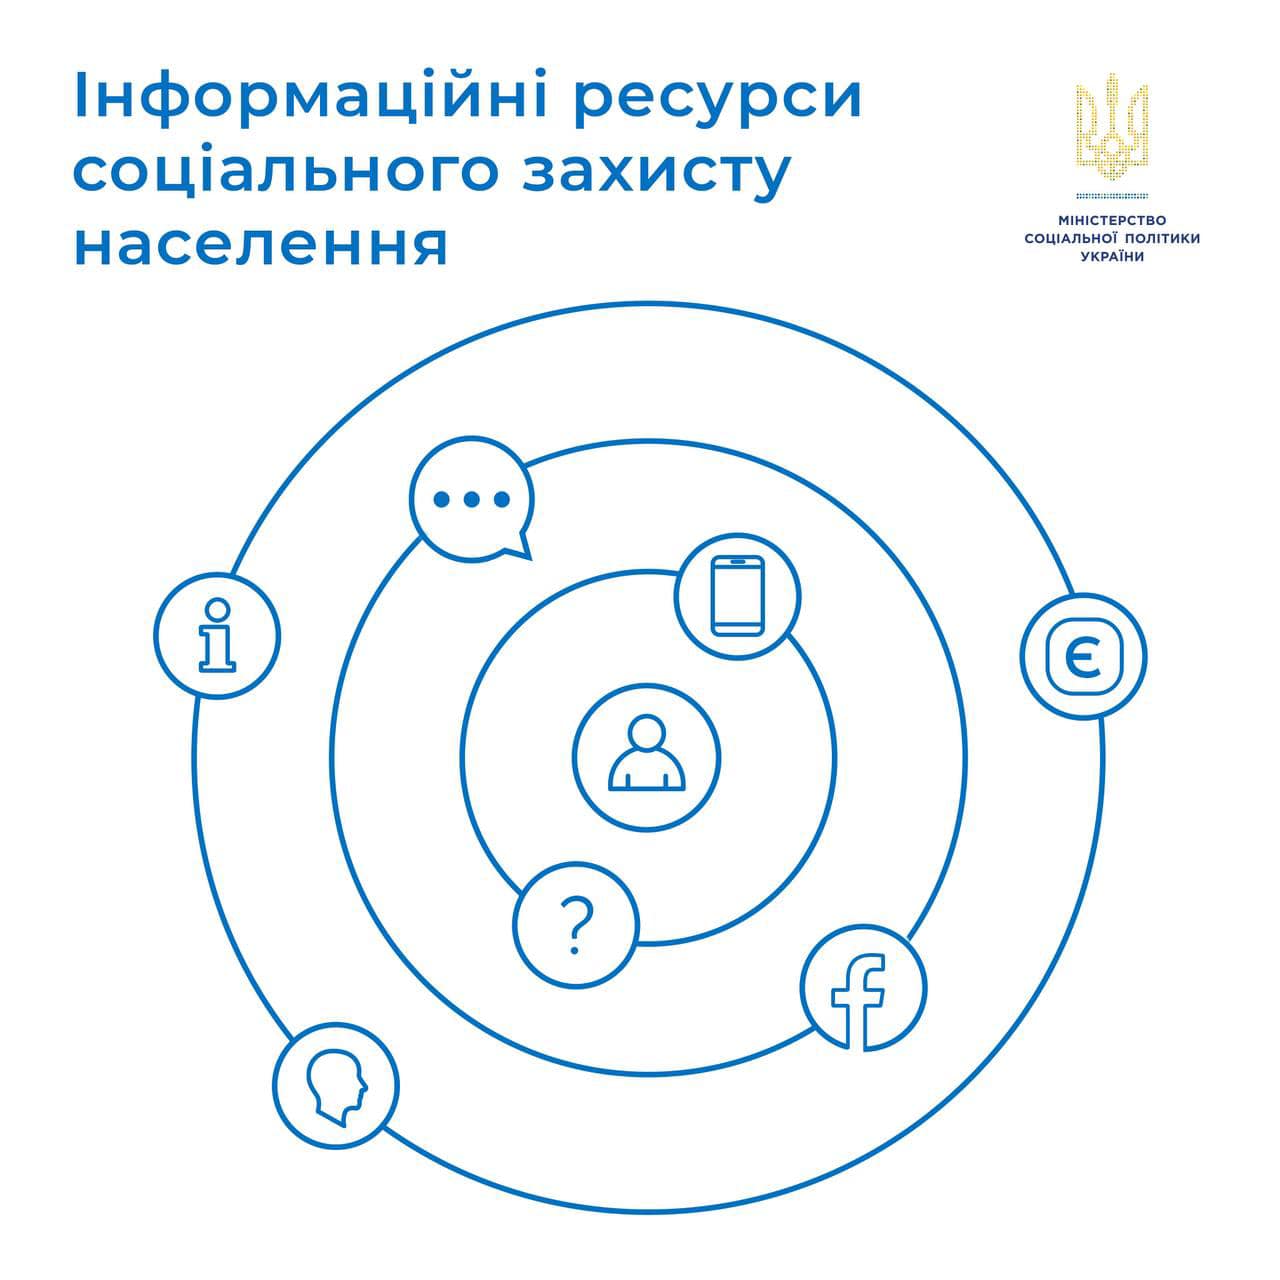 Корисні посилання від міністерства соціальної політики України